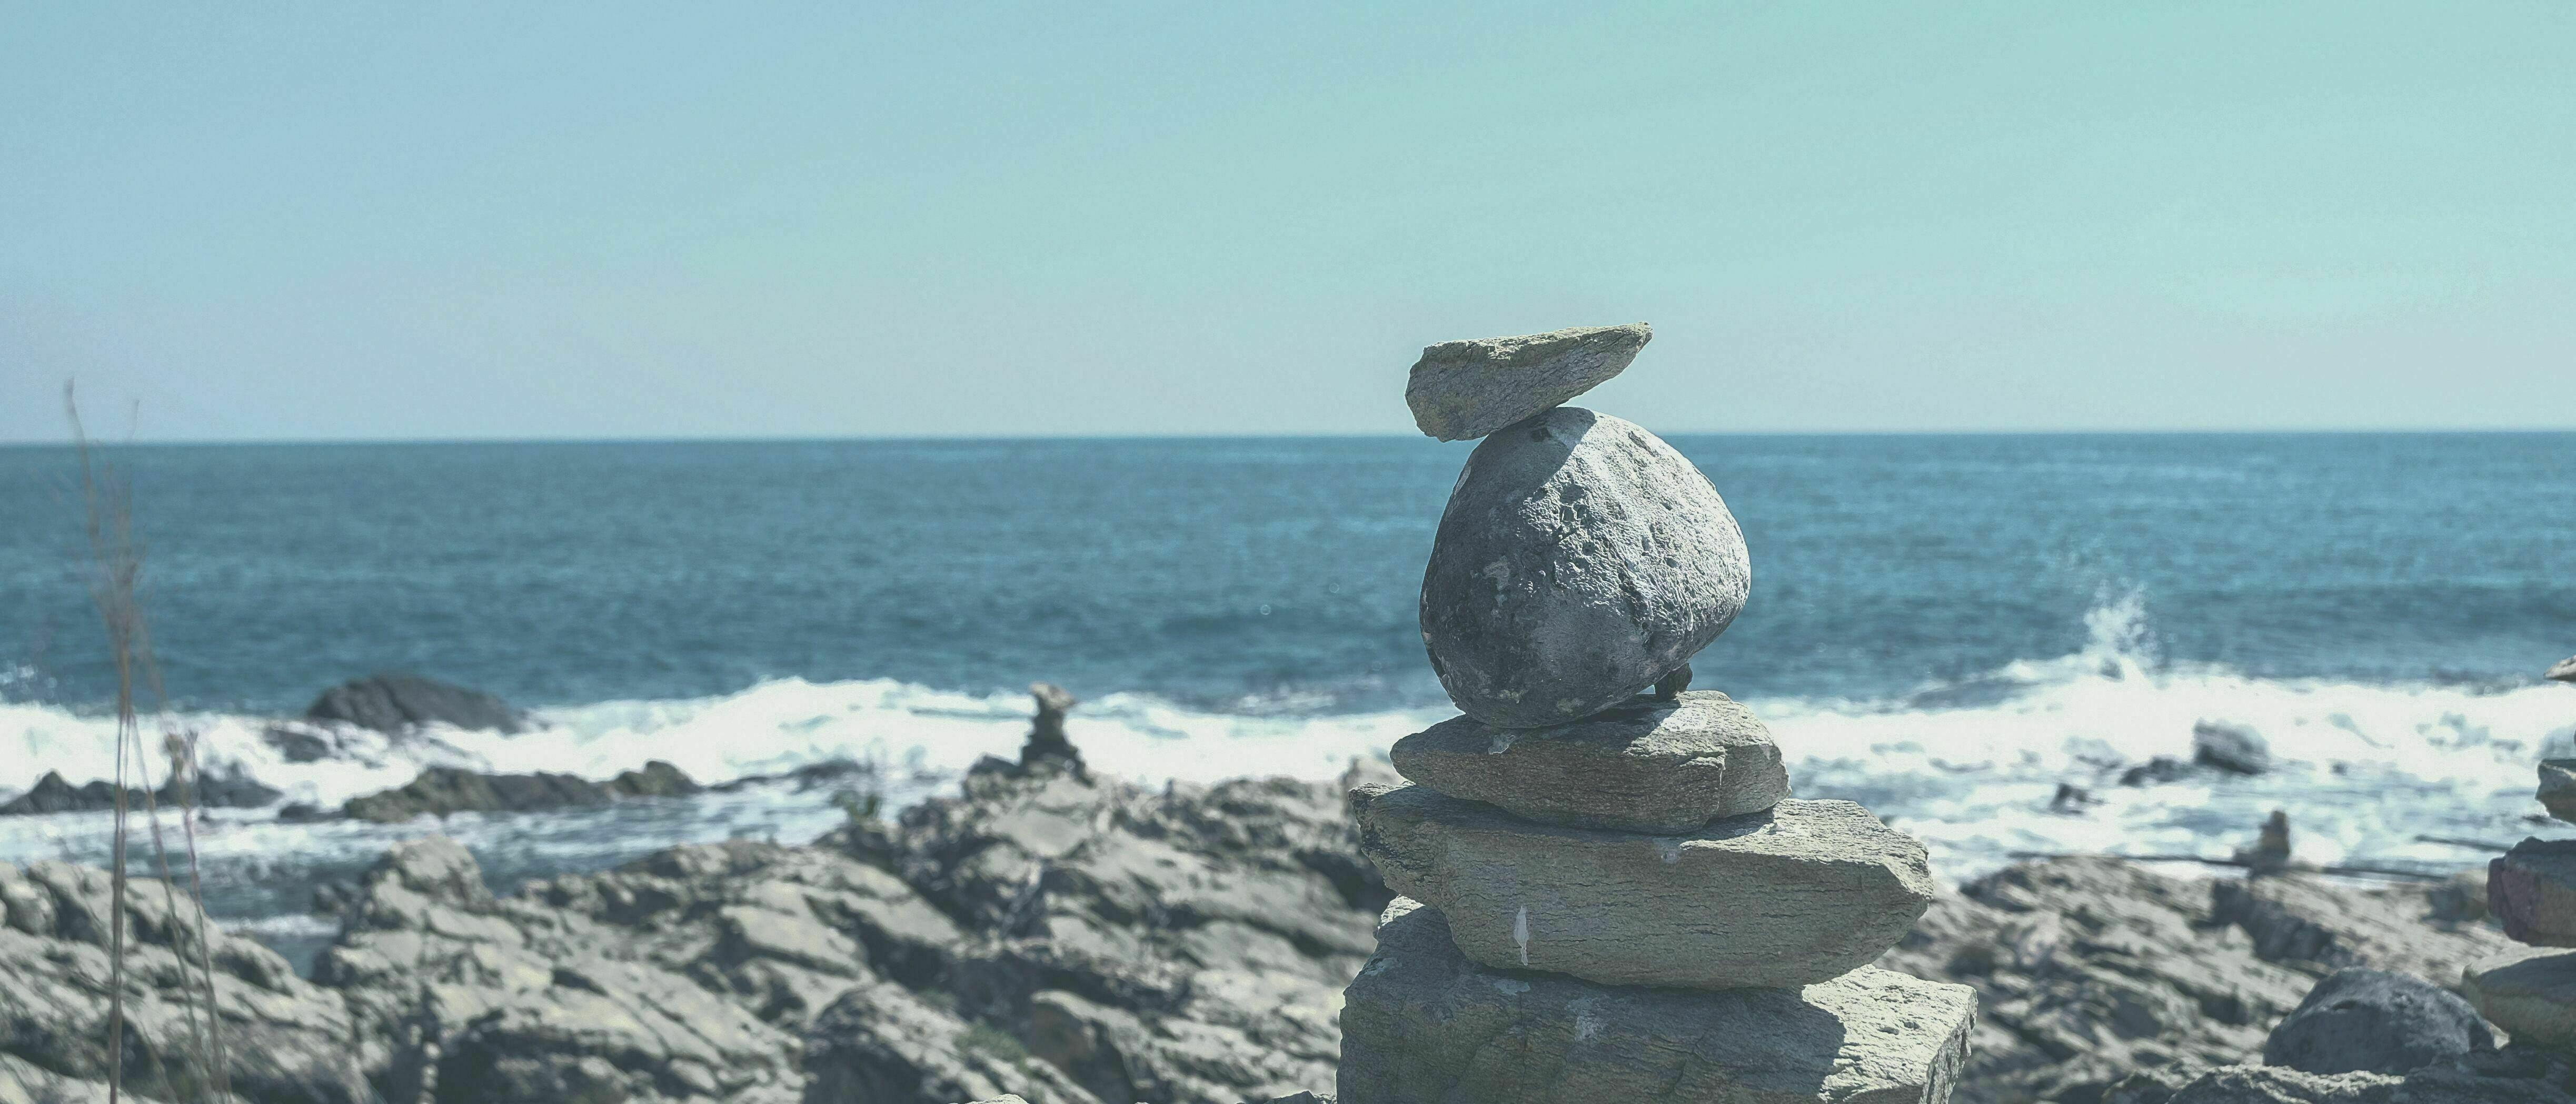 Für mehr Entspannung - mit der 7Mind App einfach Meditieren lernen